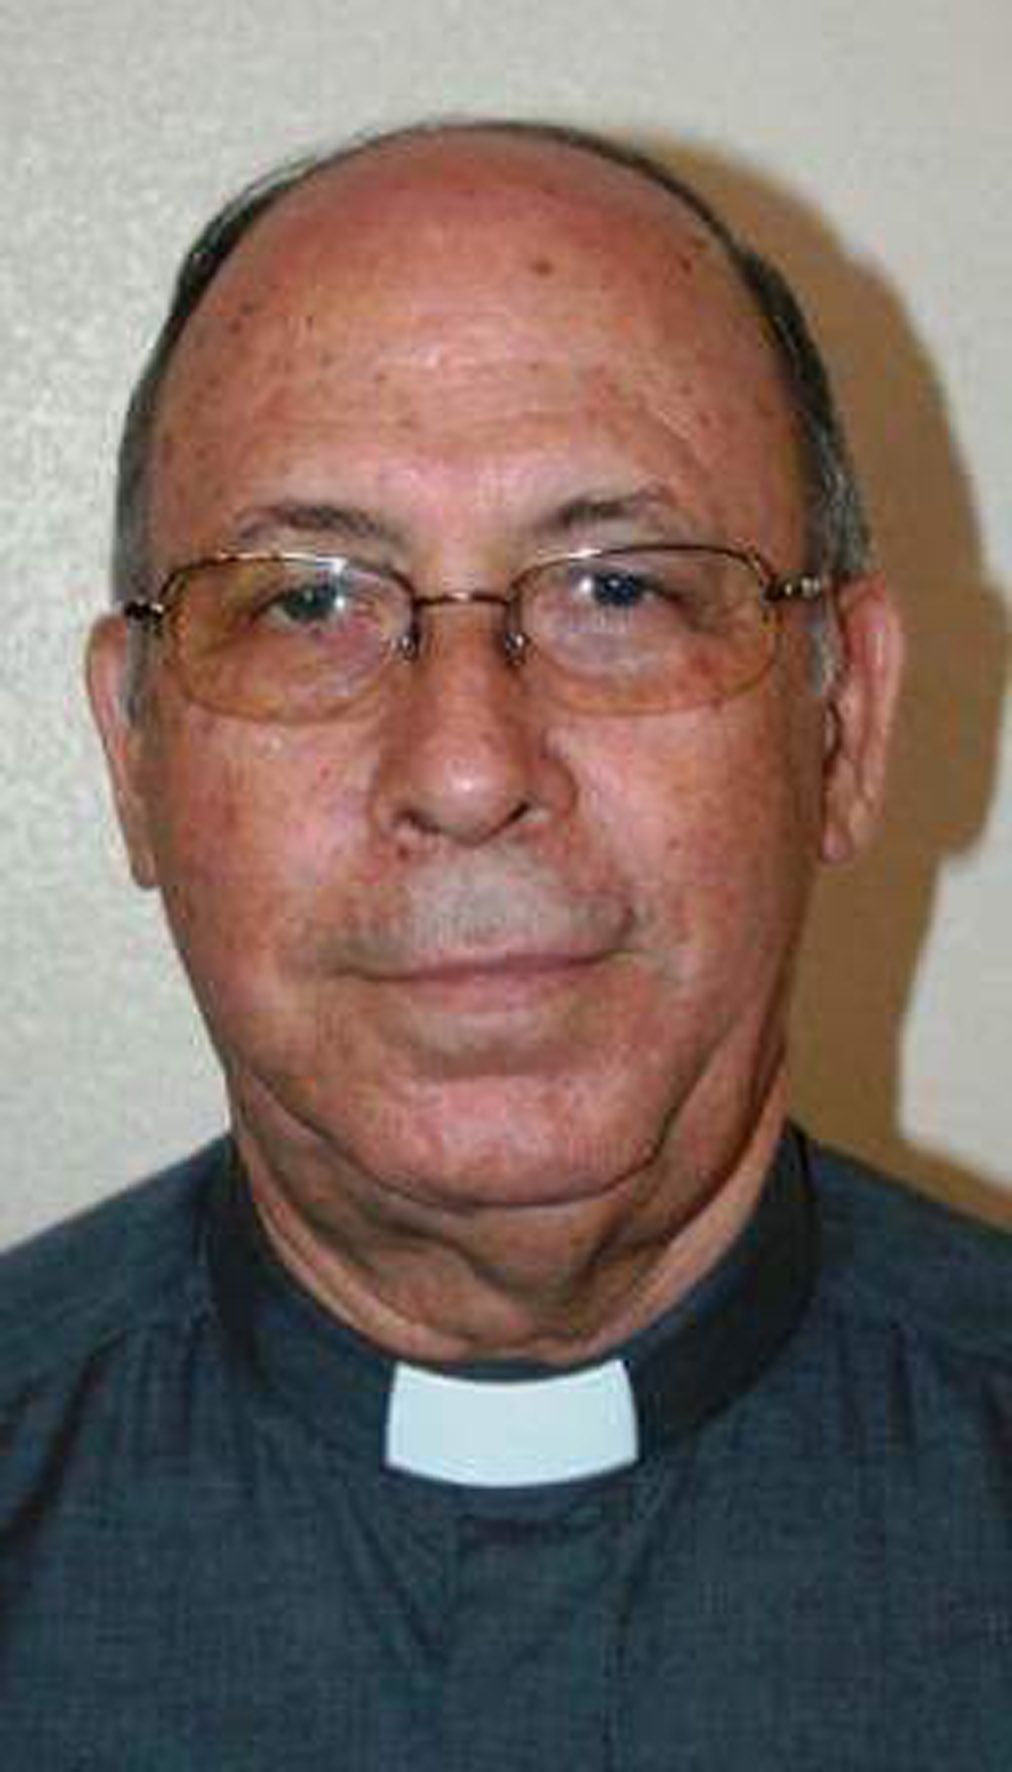 Fallece Don Luis Martínez, quien fuera párroco en Las Torres de Cotillas en los años 80 y 90 del siglo pasado